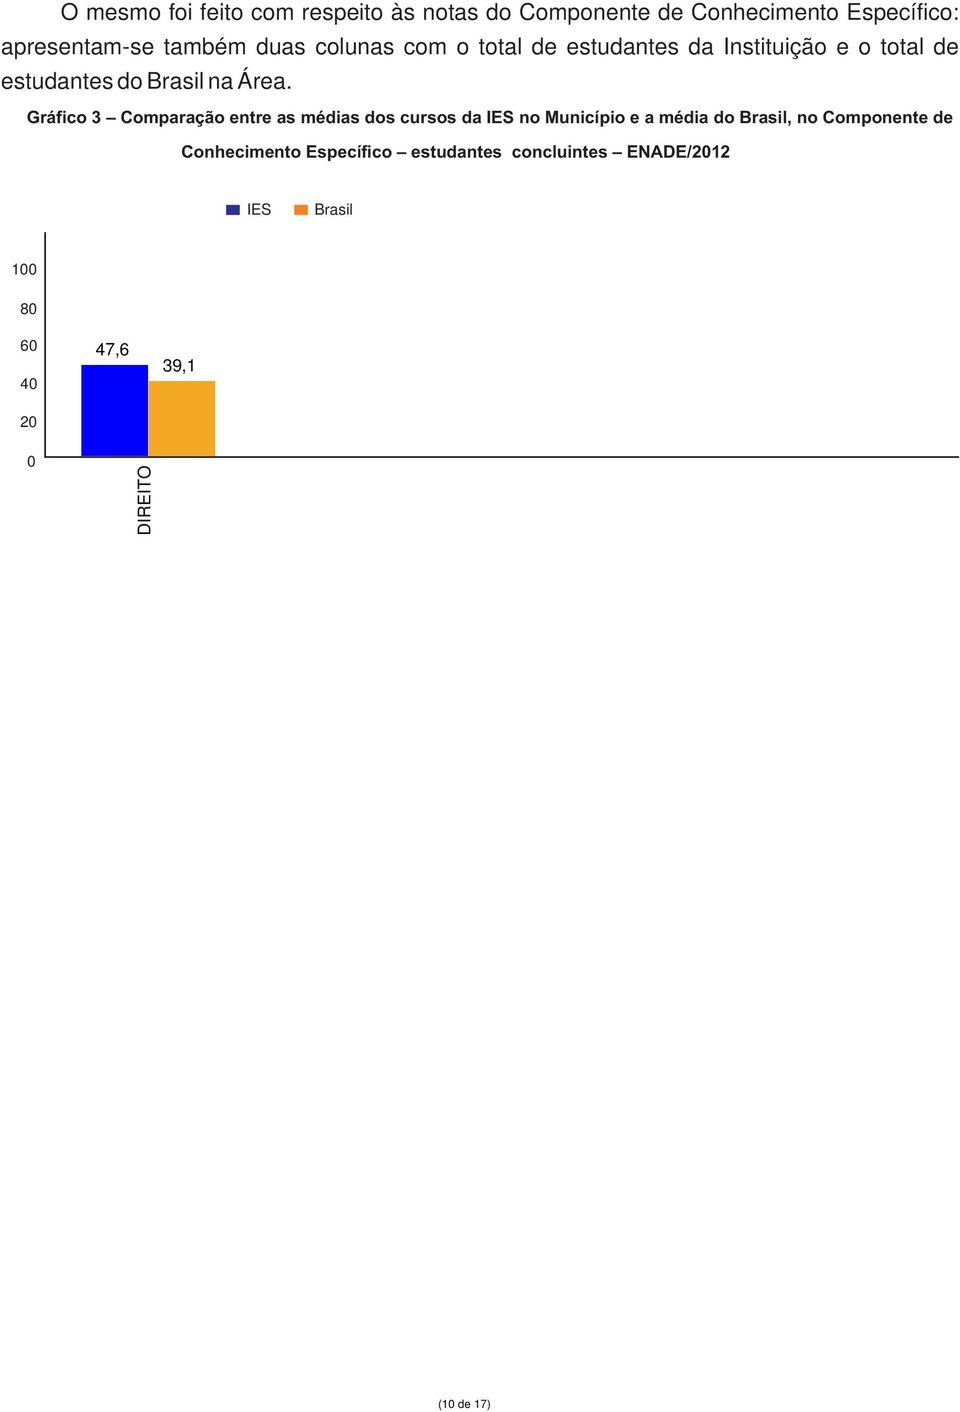 Gráfico 3 Comparação entre as médias dos cursos da IES no Município e a média do Brasil, no Componente de